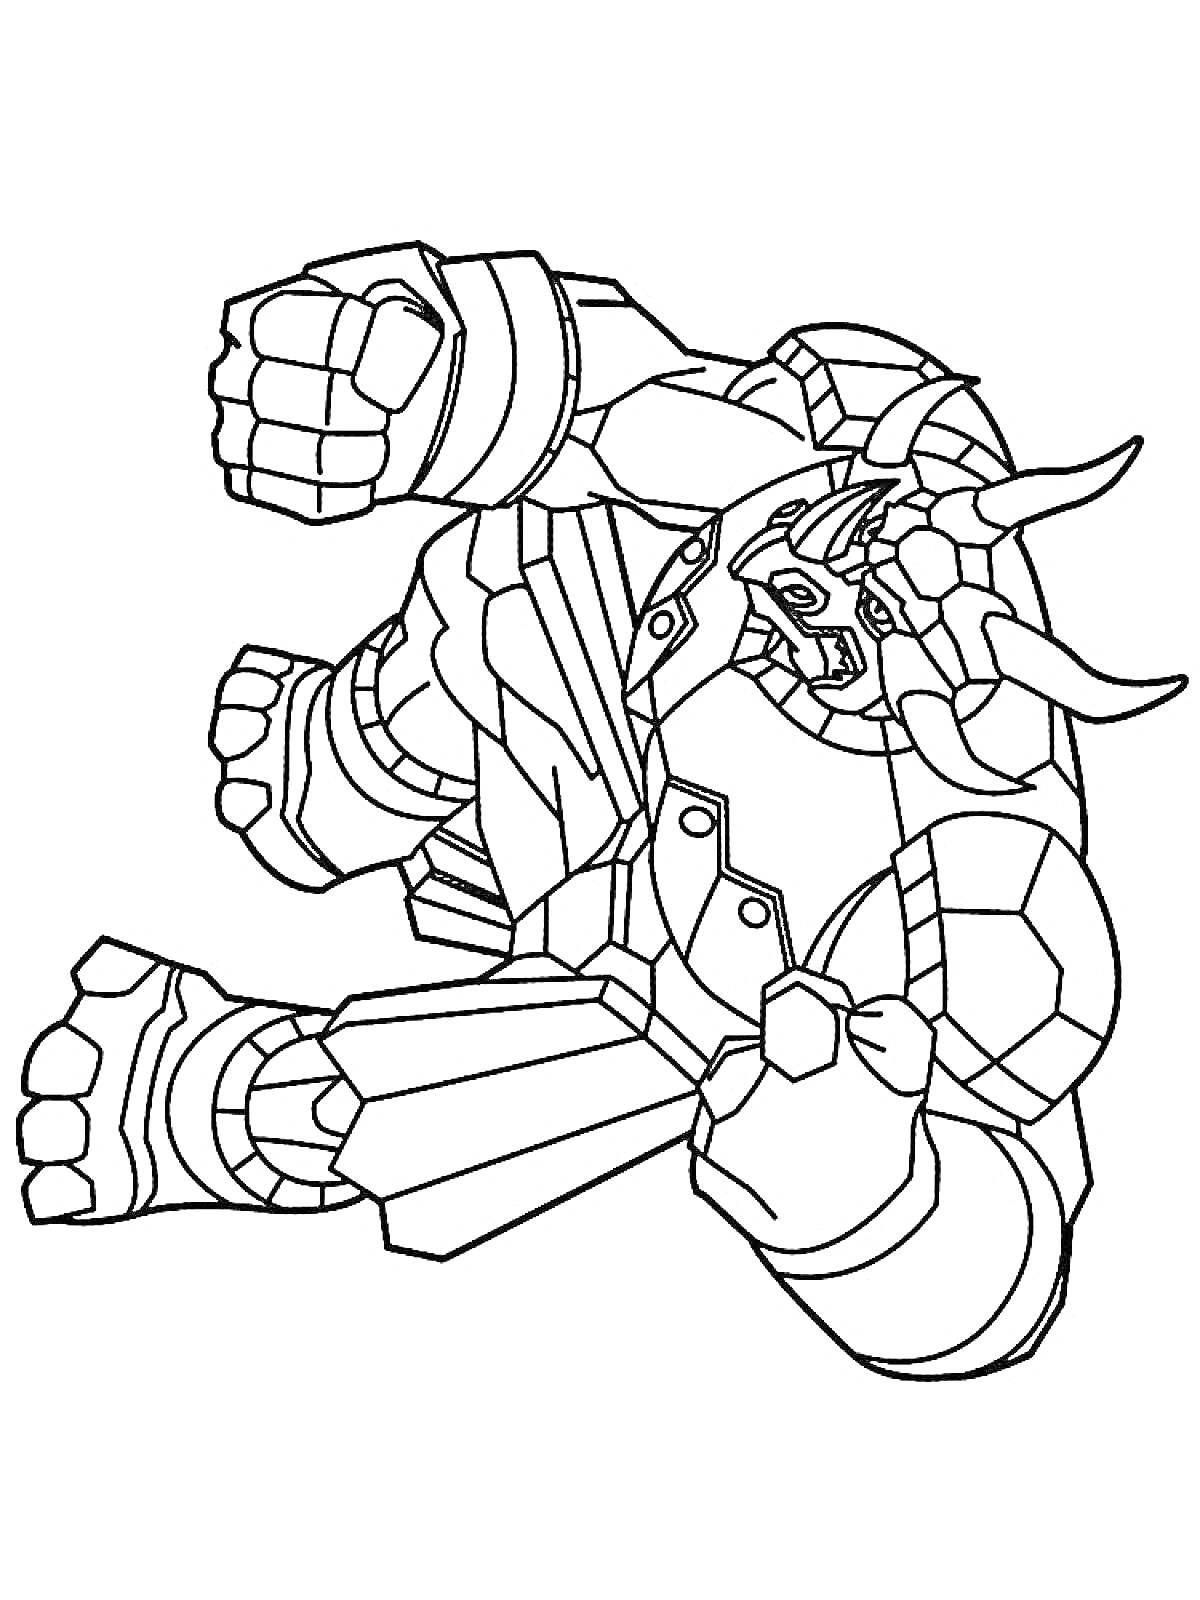 РаскраскаБакуган в форме робота-монстра с рогами, массивными拳 и бронированными ногами.